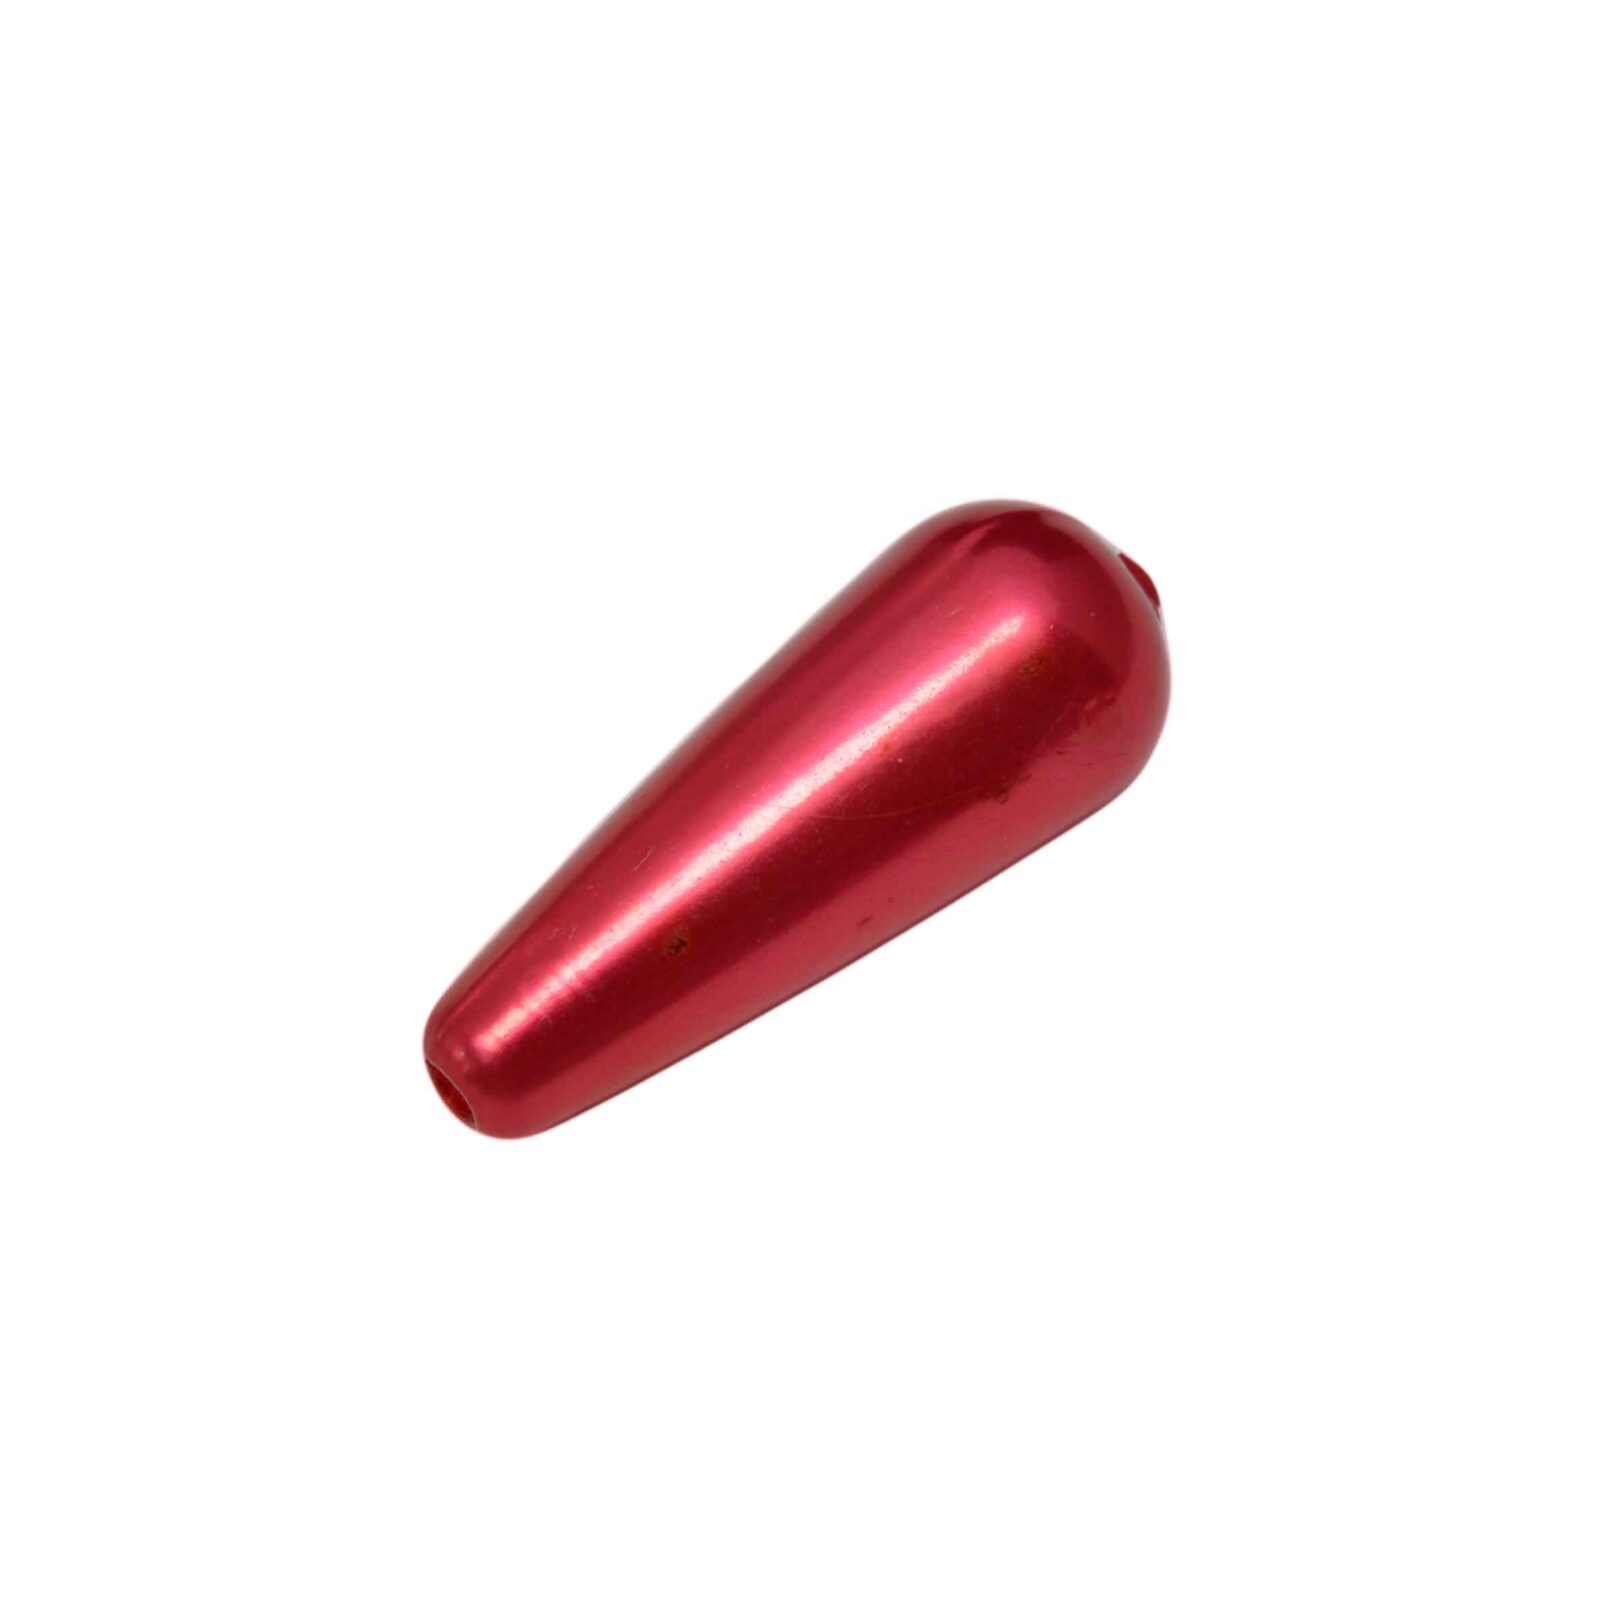 Rode kunststof kraal in de vorm van een druppel